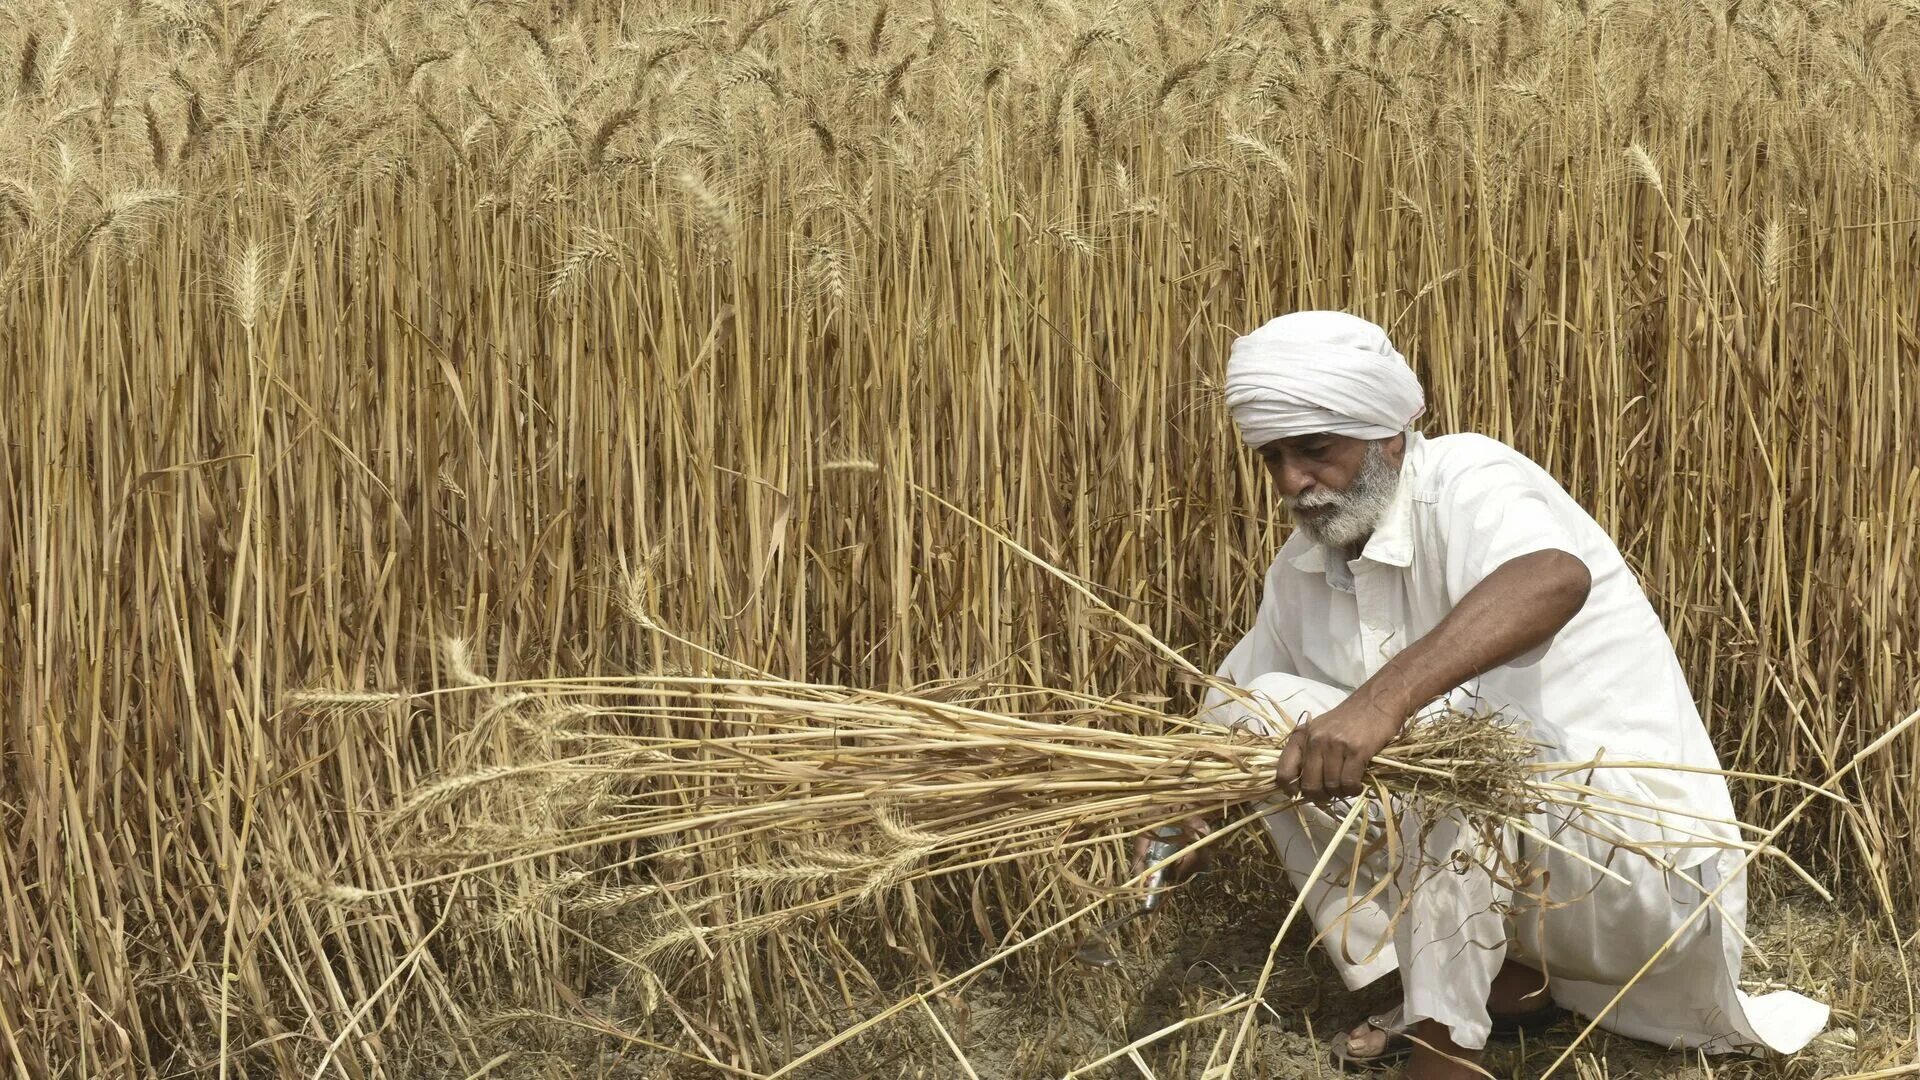 Индия пшеница. Сбор пшеницы в Индии. Праздник пшеницы в Индии. Сорта пшеницы в Индии. In northern india they harvest their wheat